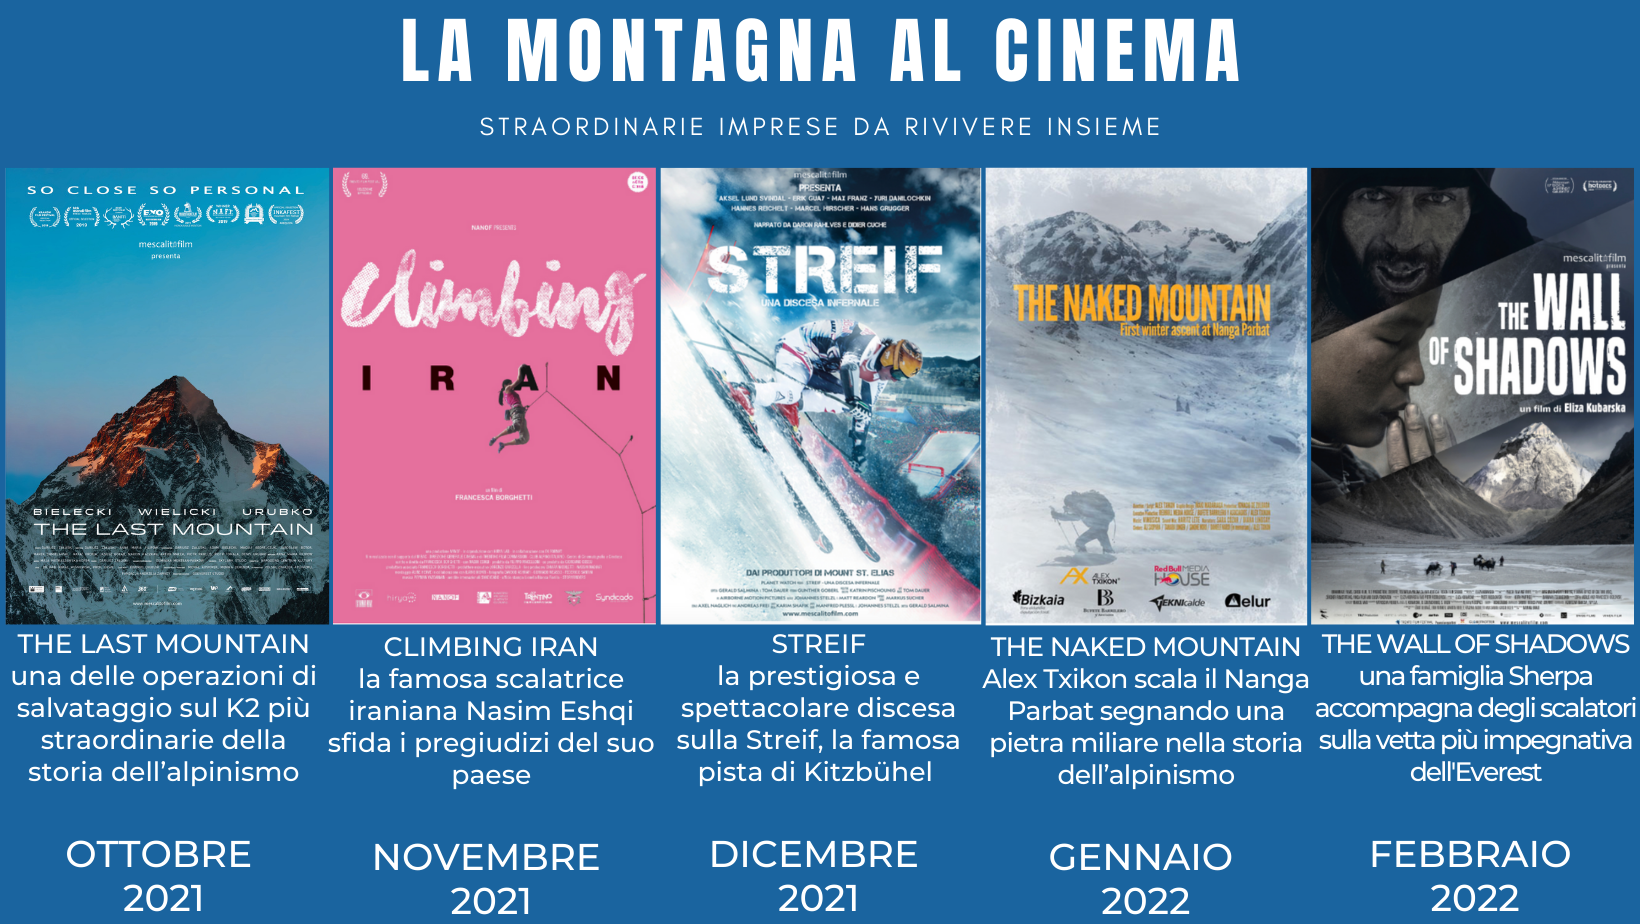 Al via il progetto “La montagna al cinema” in ben 13 regioni d’Italia